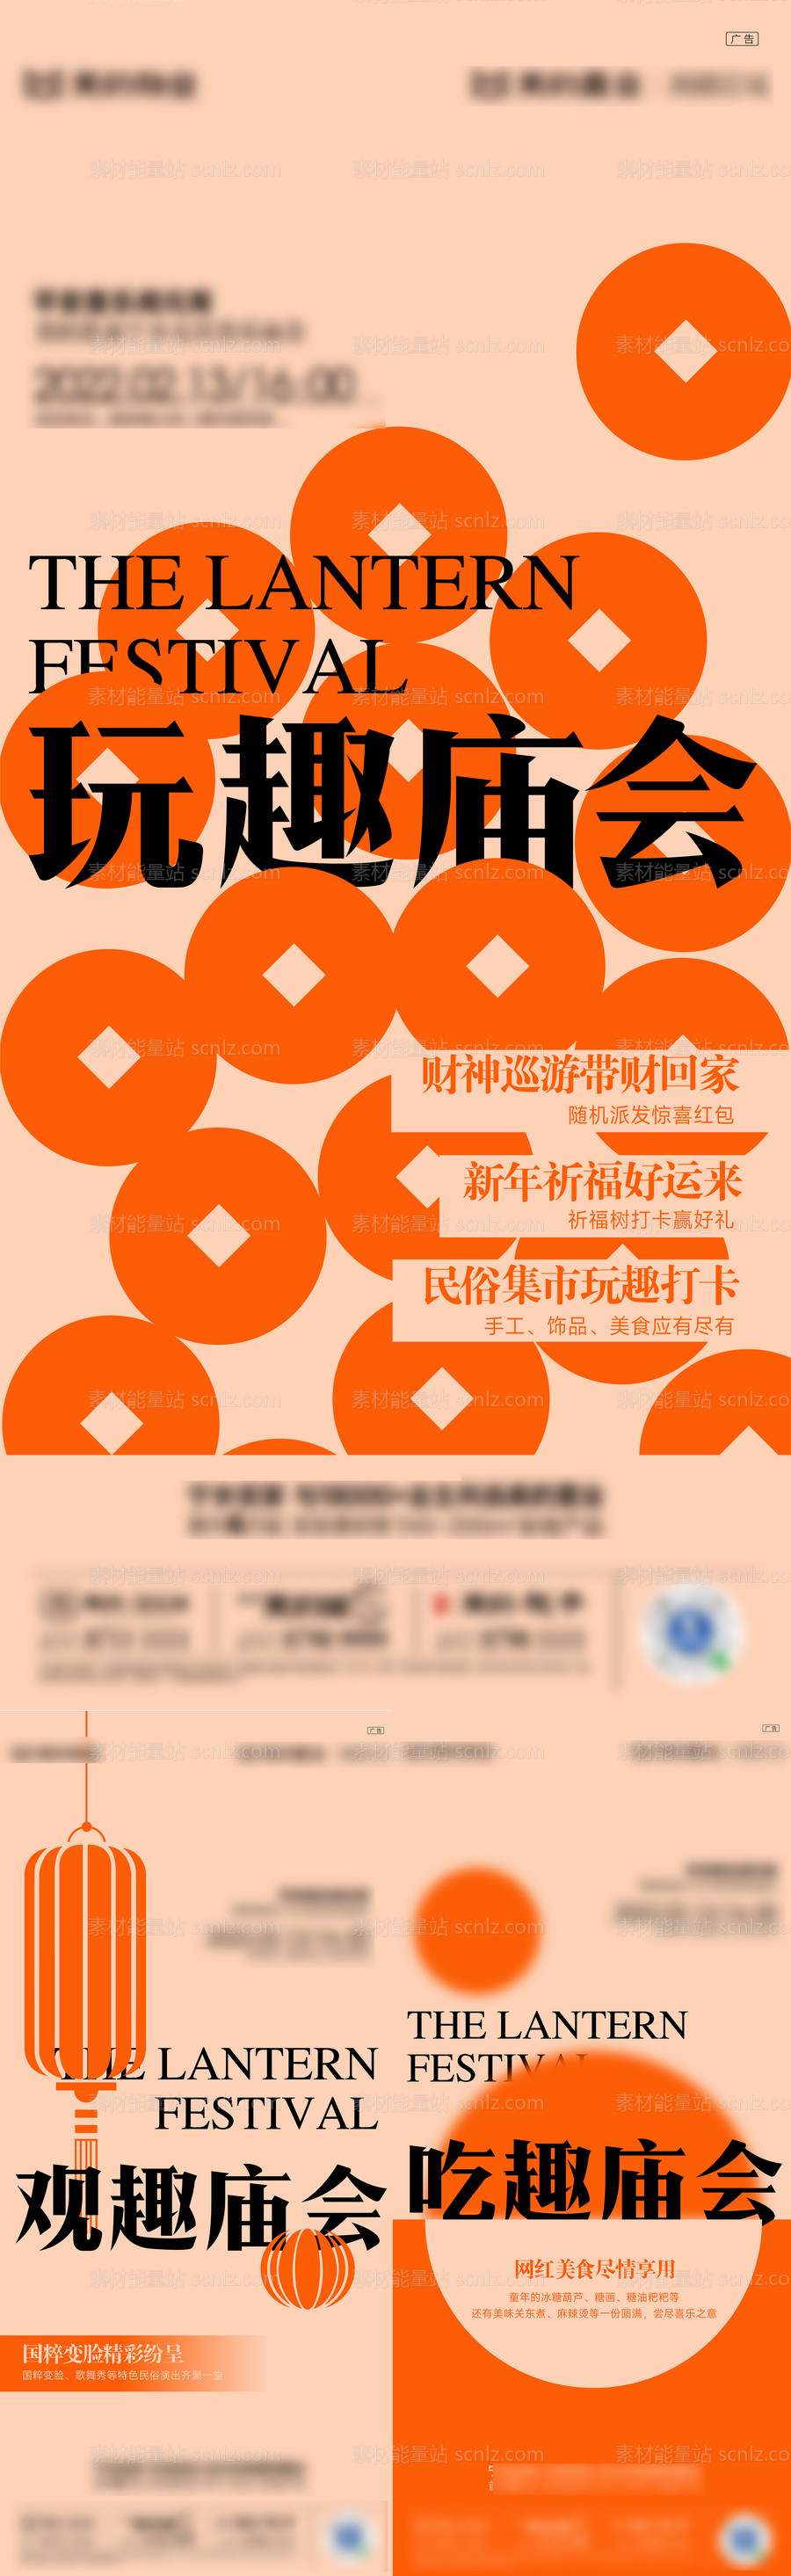 素材能量站-元宵节庙会活动系列海报